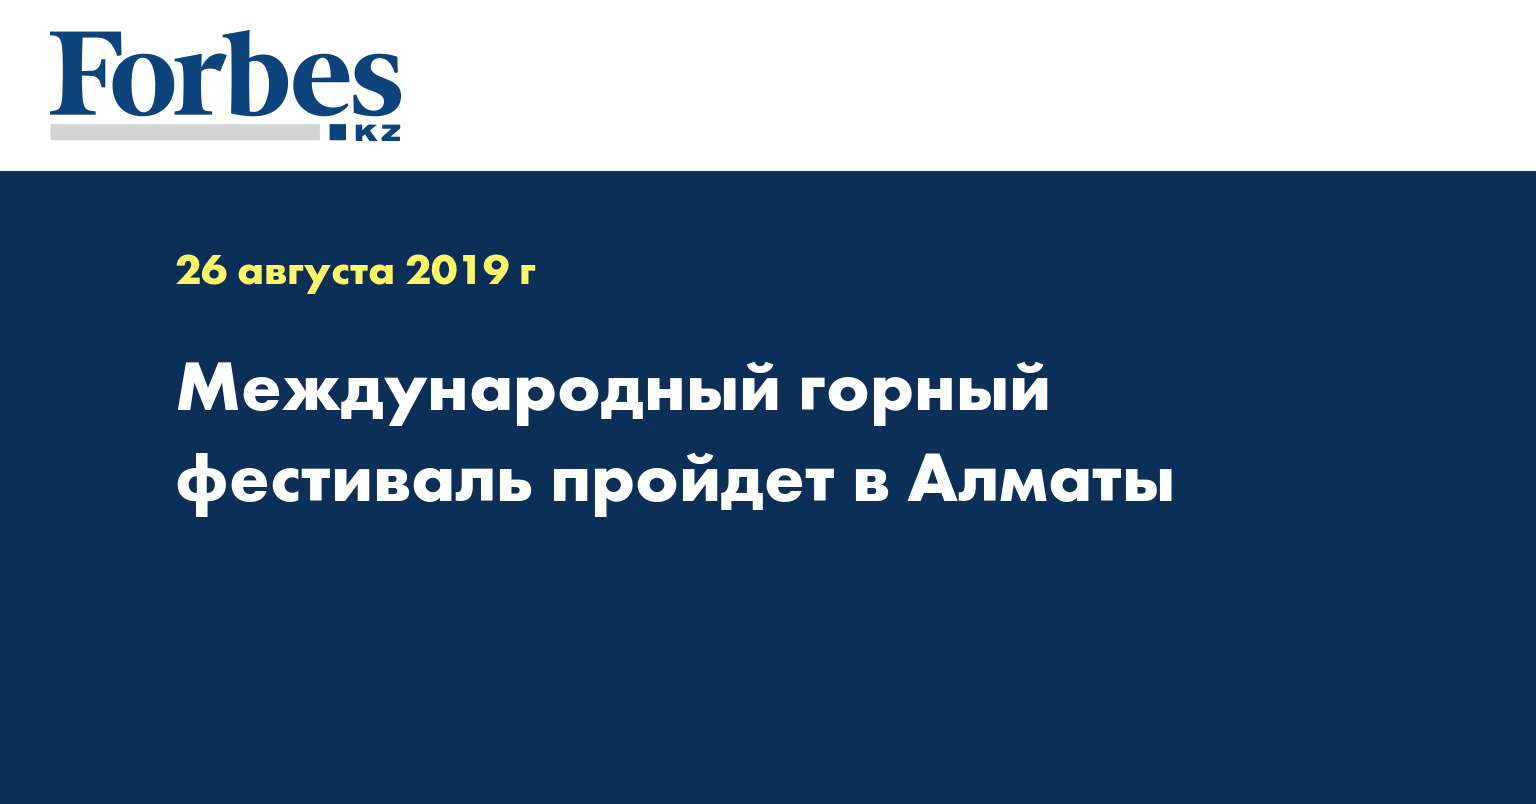 Международный горный фестиваль пройдет в Алматы